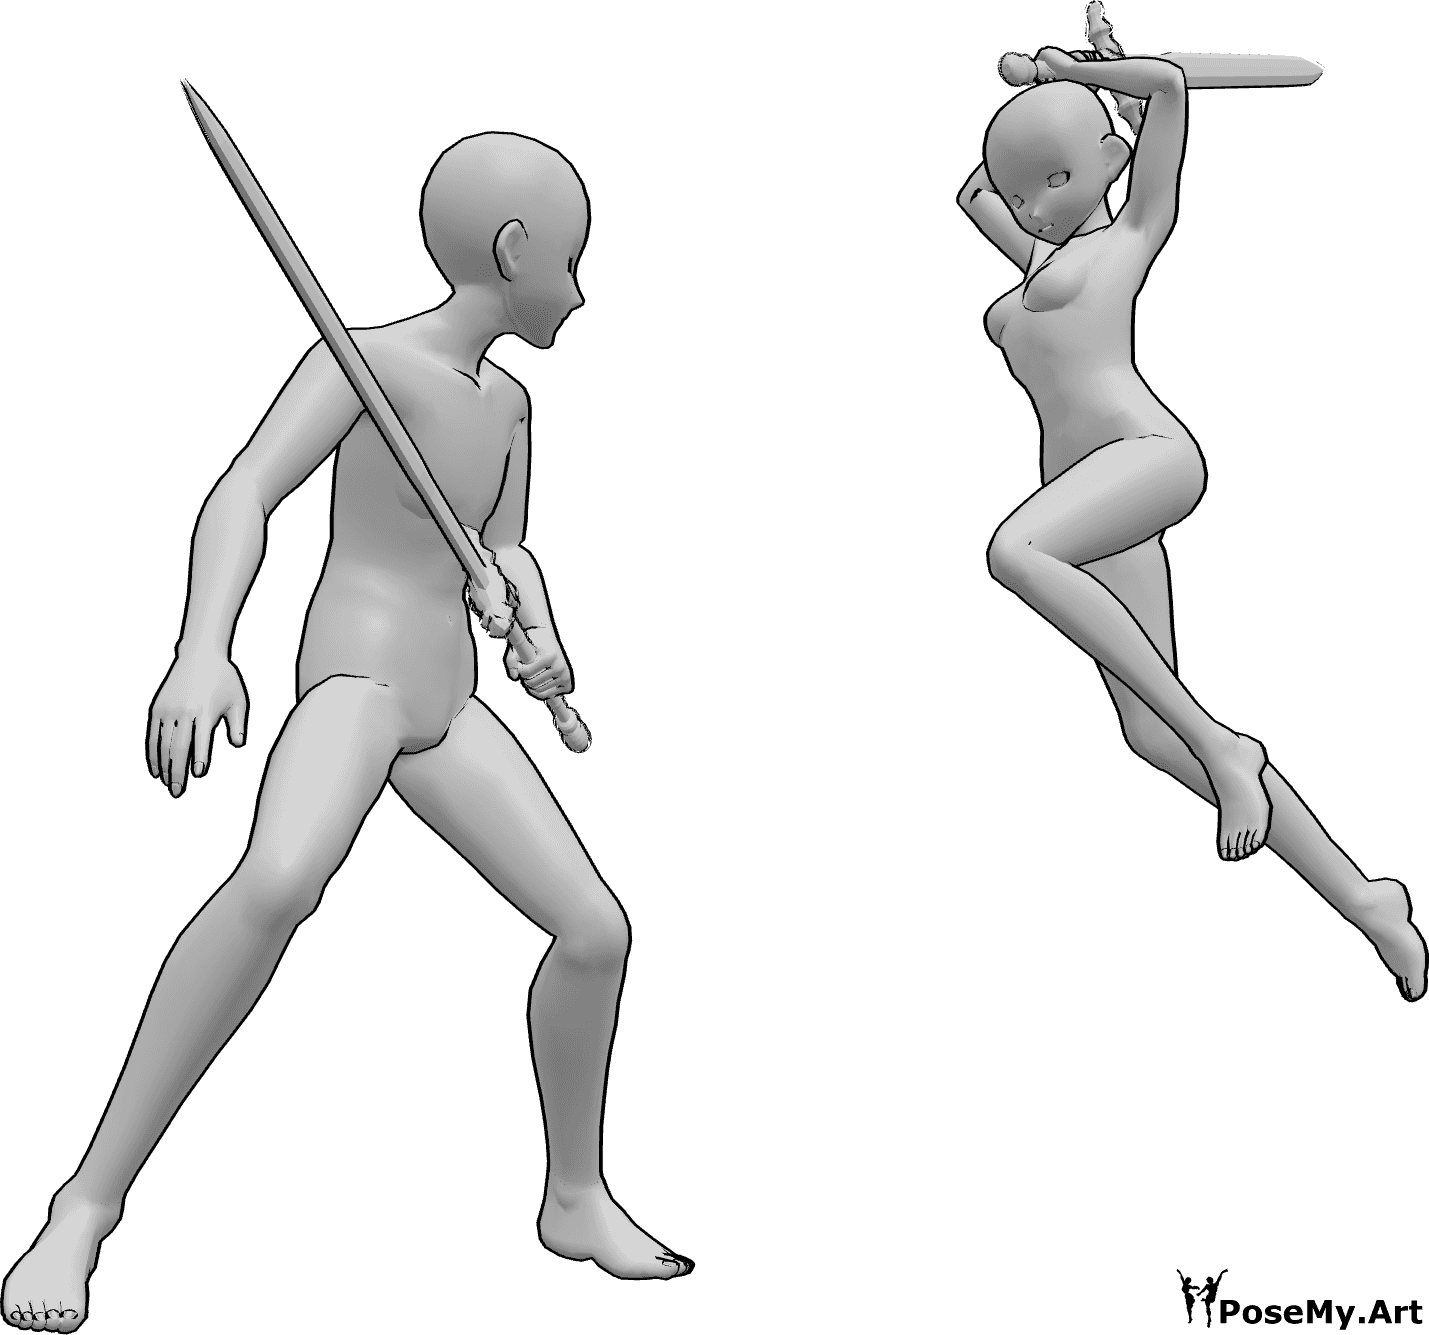 Riferimento alle pose- Posa da battaglia con spada in stile anime - Anime femmina e maschio stanno combattendo con le spade, la femmina sta per colpire con la sua spada